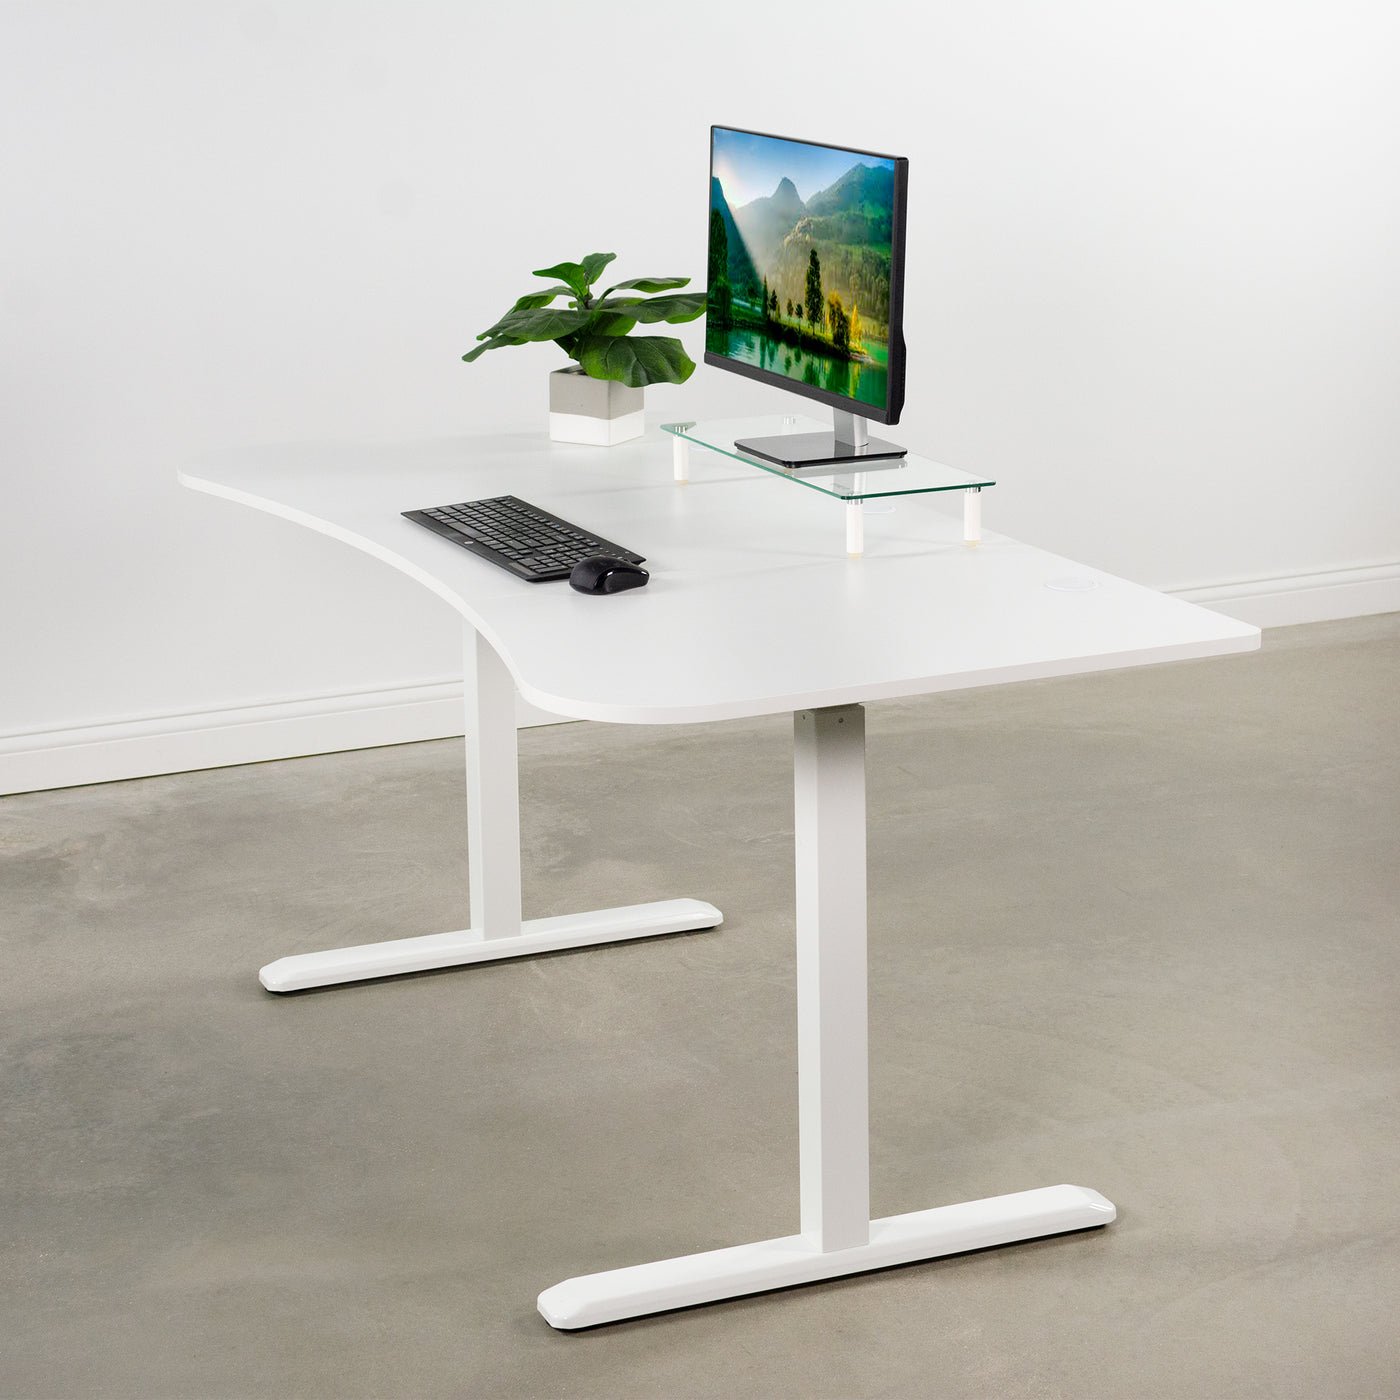 Sturdy desktop tabletop for ergonomic workstation.